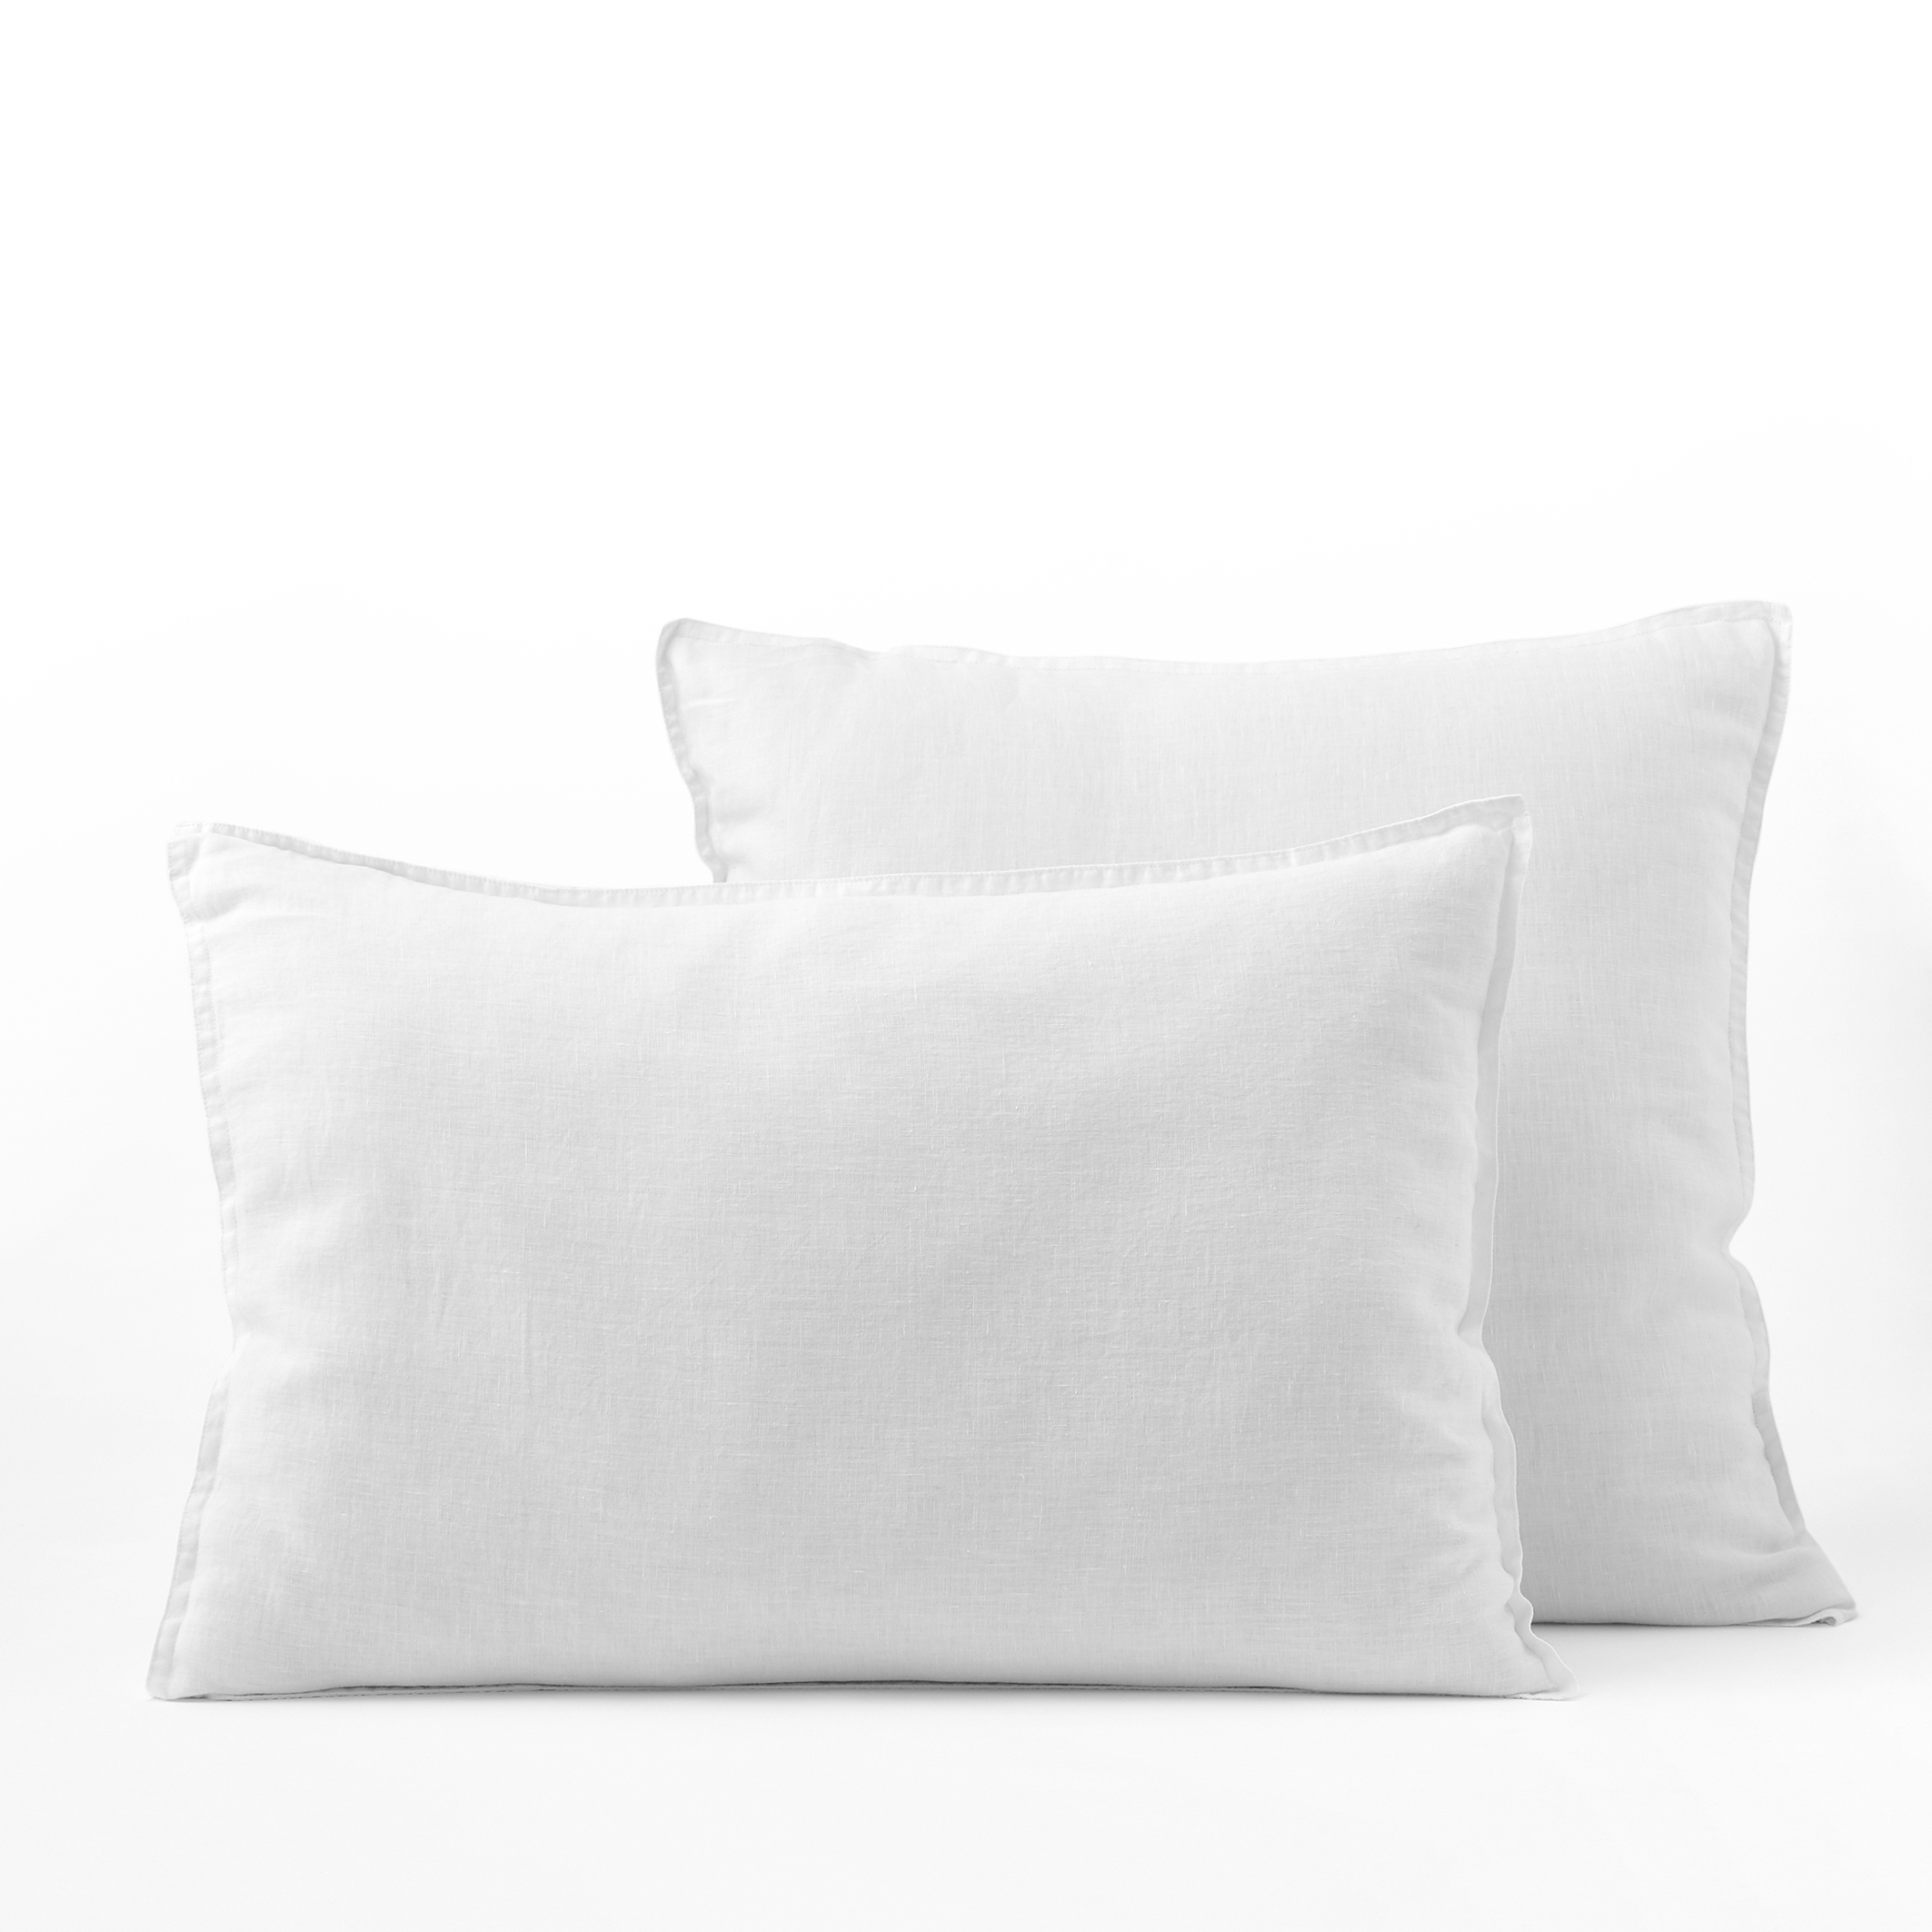 Pillowcases | Patterned, Plain, Cotton | La Redoute